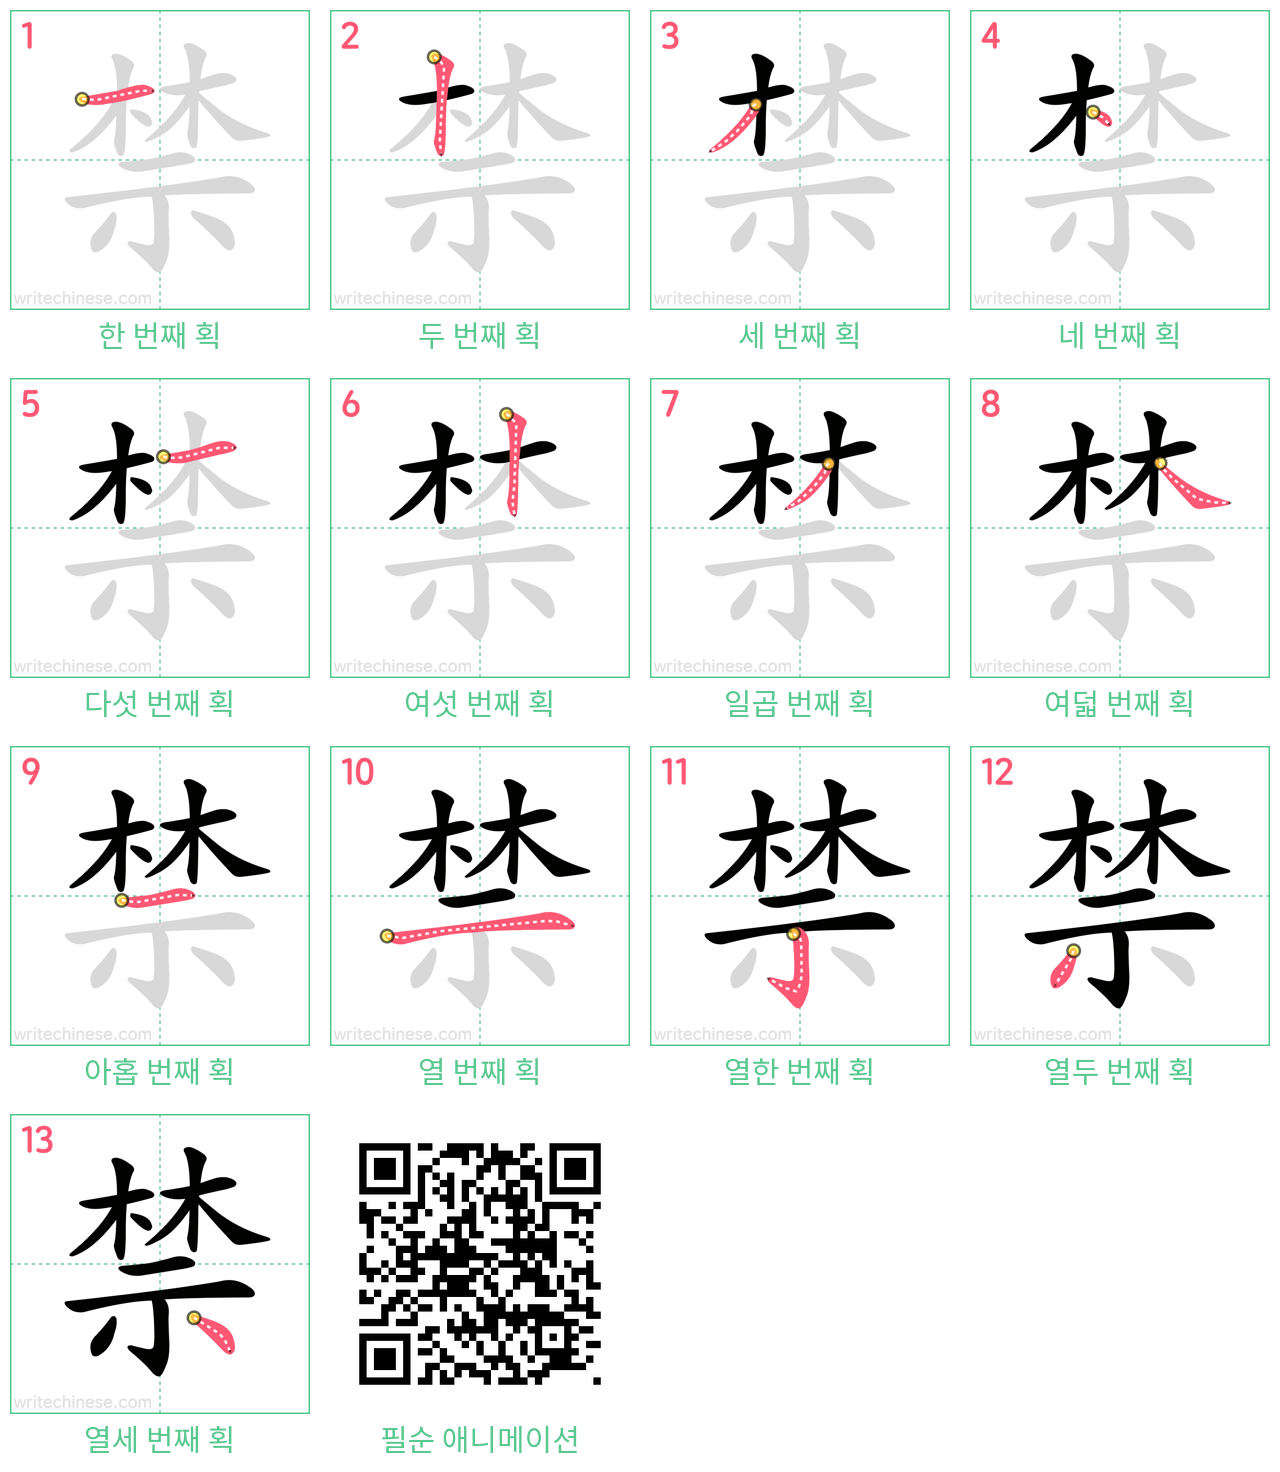 禁 step-by-step stroke order diagrams